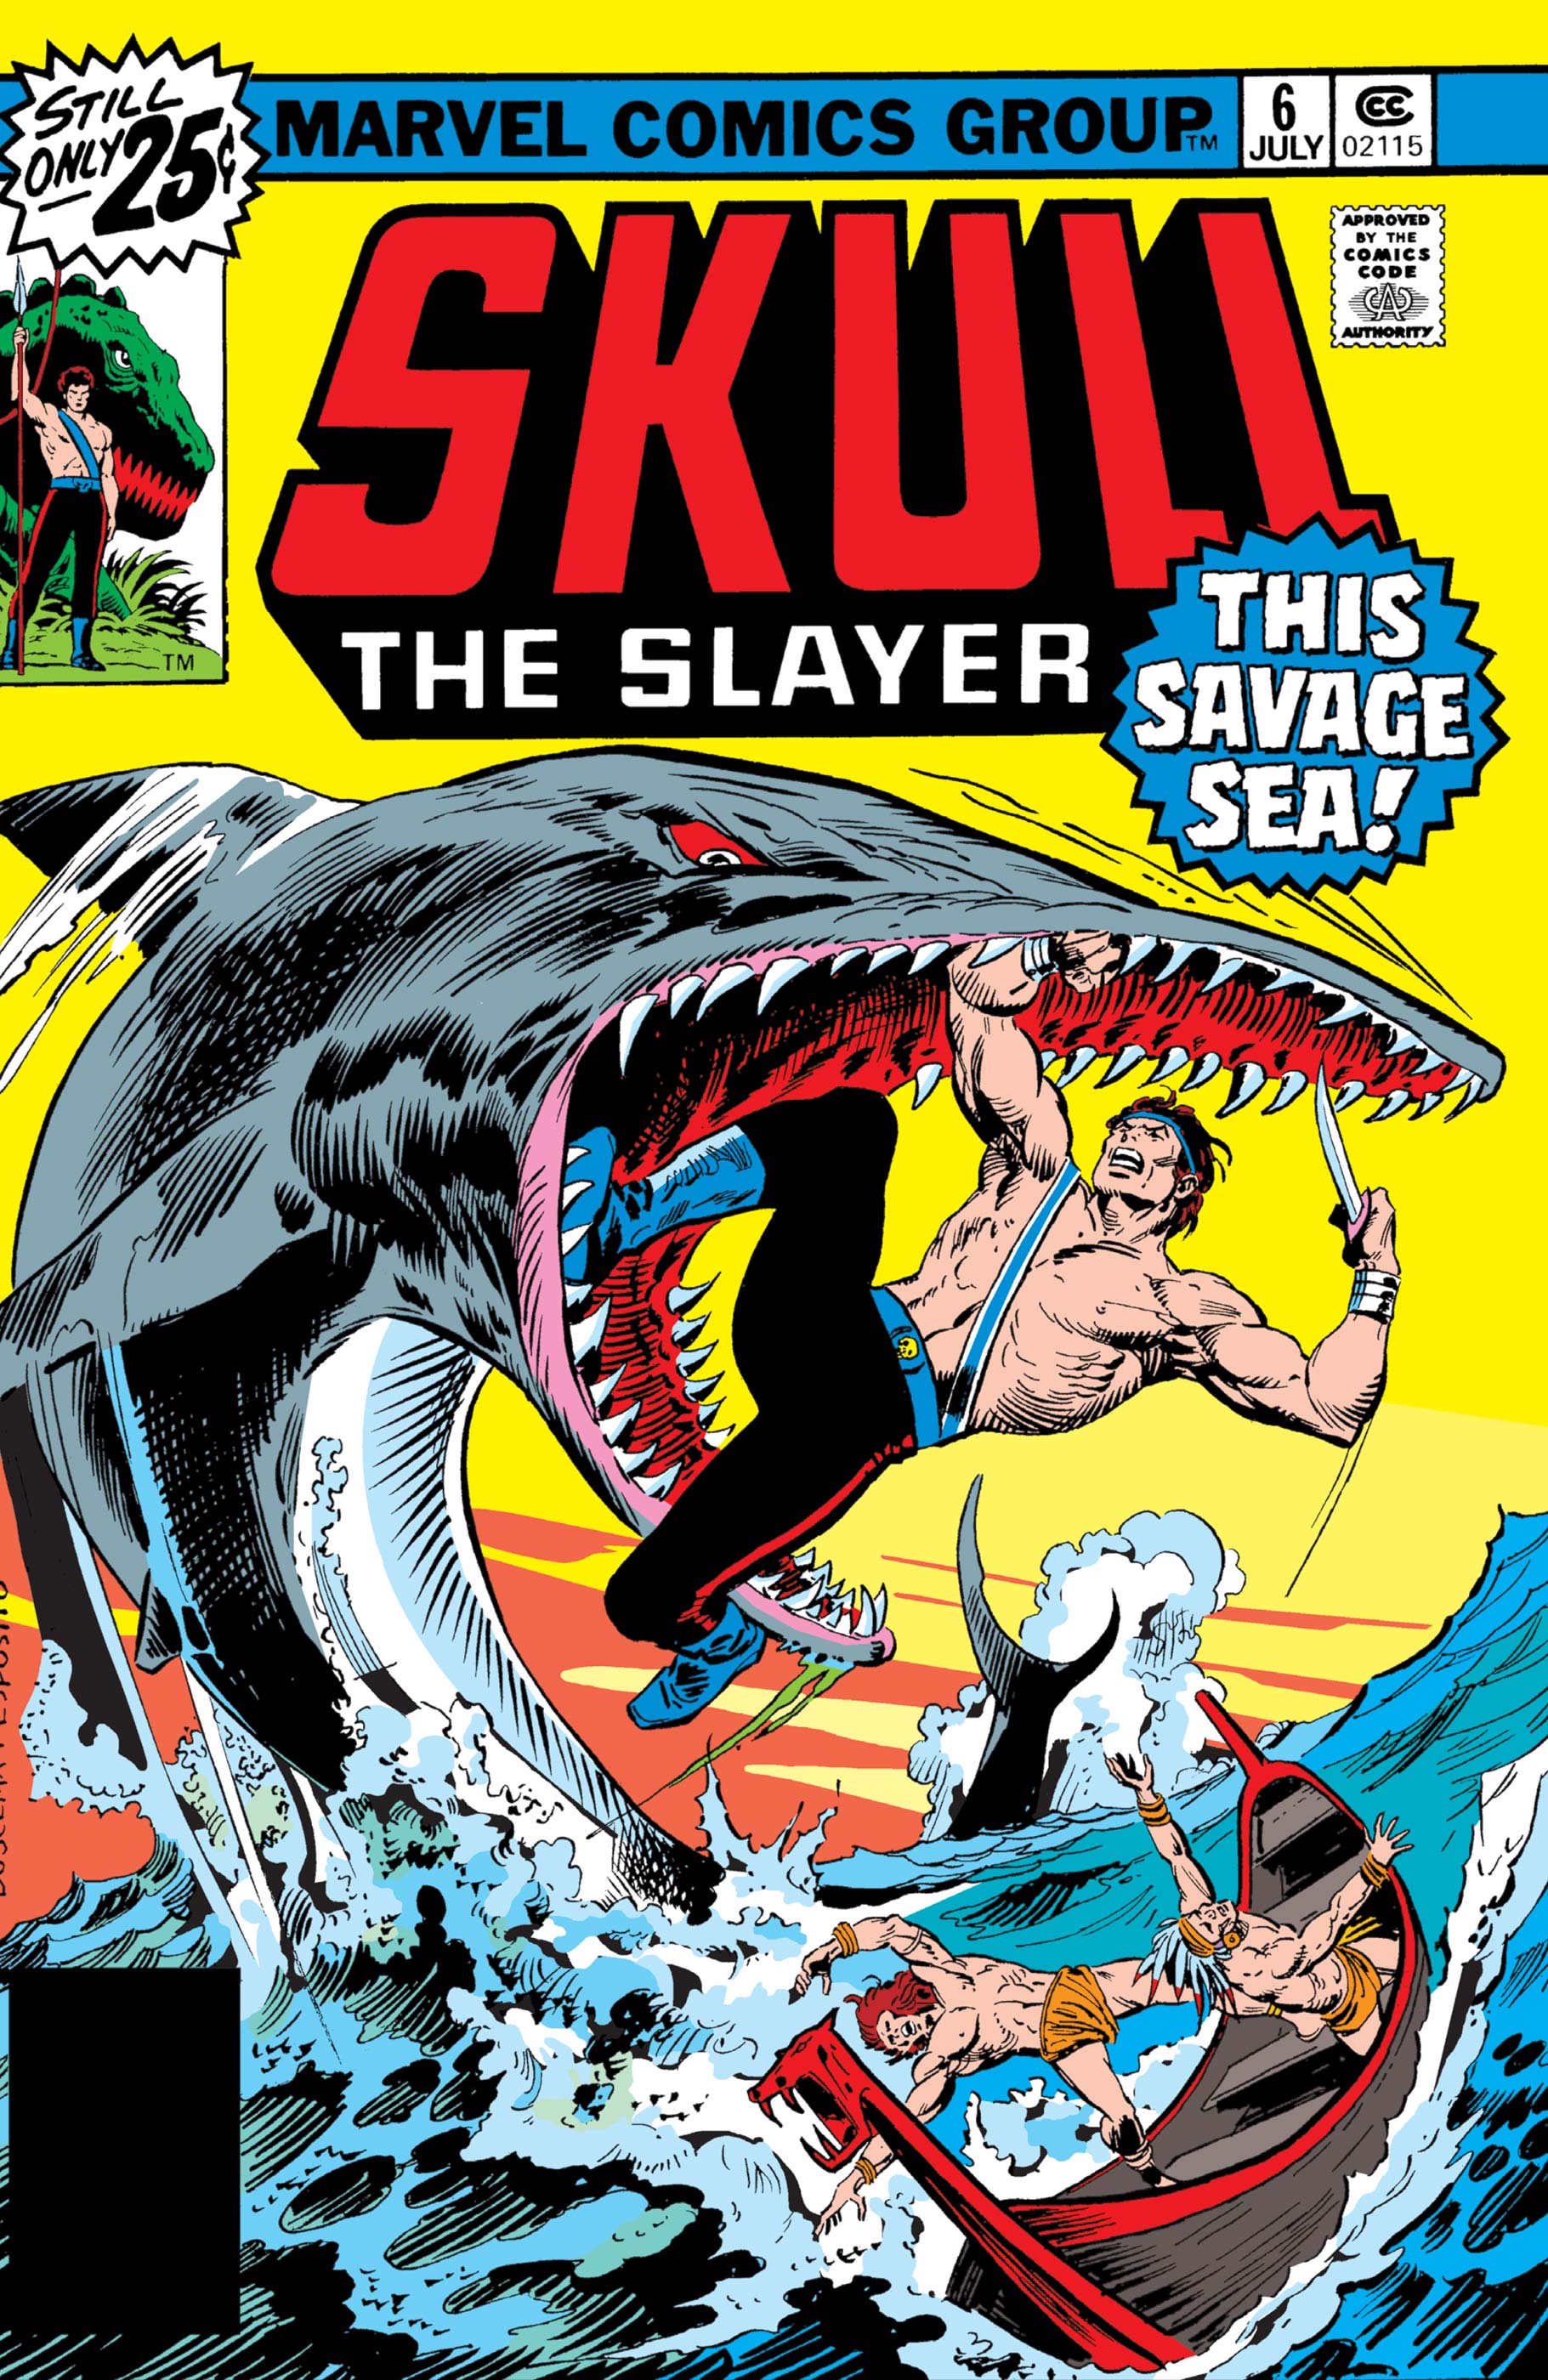 Skull the Slayer (1975) #6